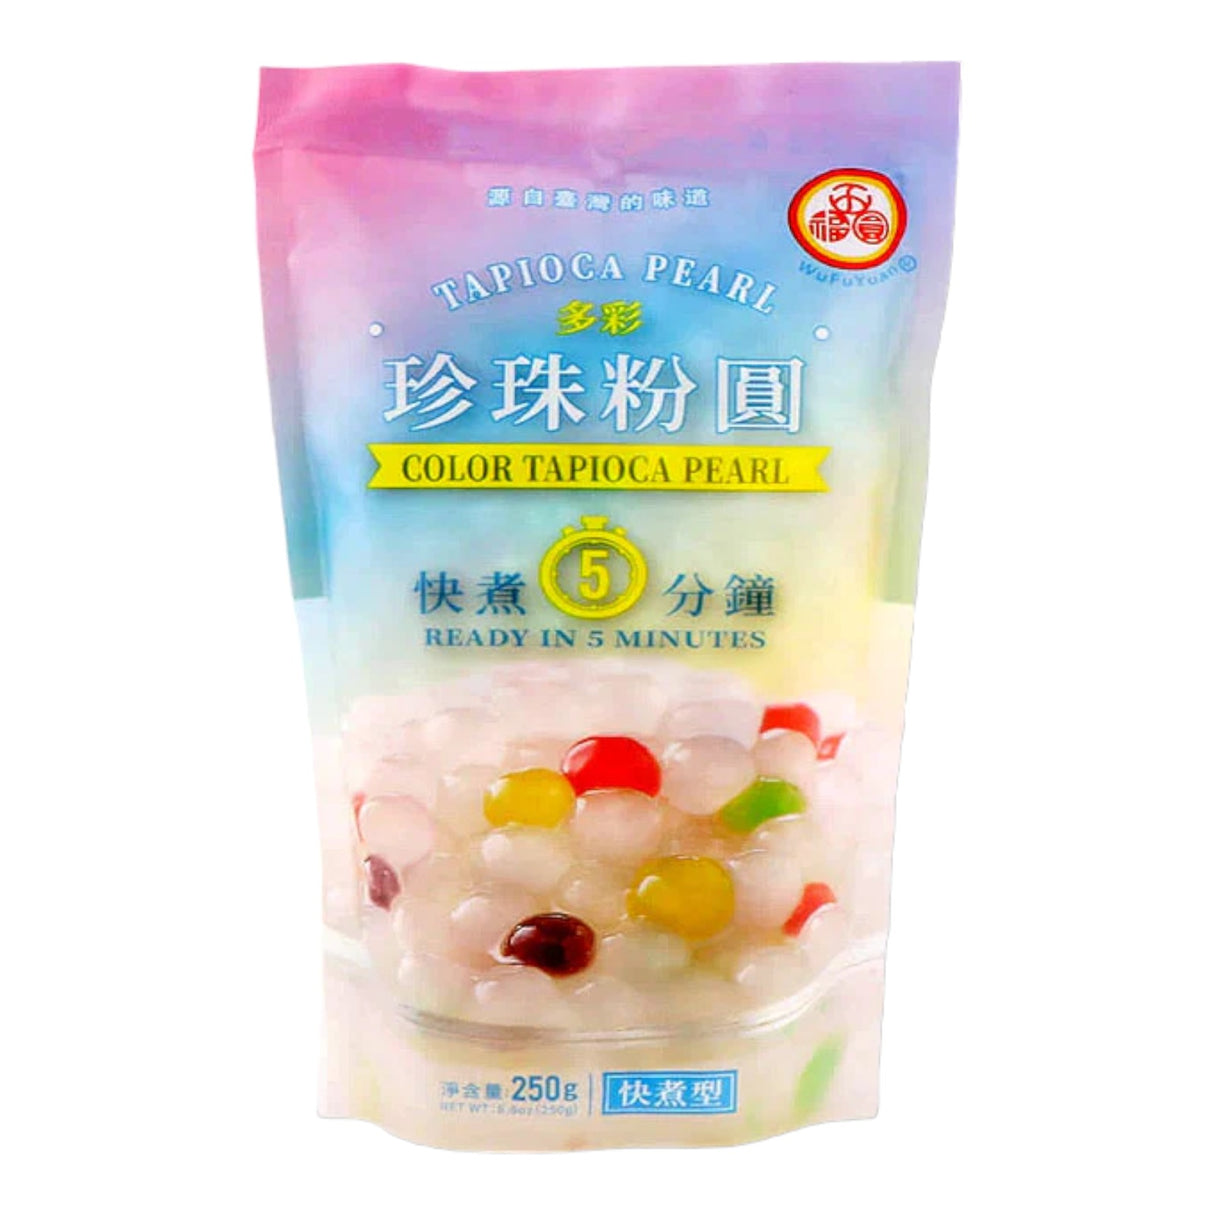 Wufuyuan Tapioca Pearl Color Sugar Flavor